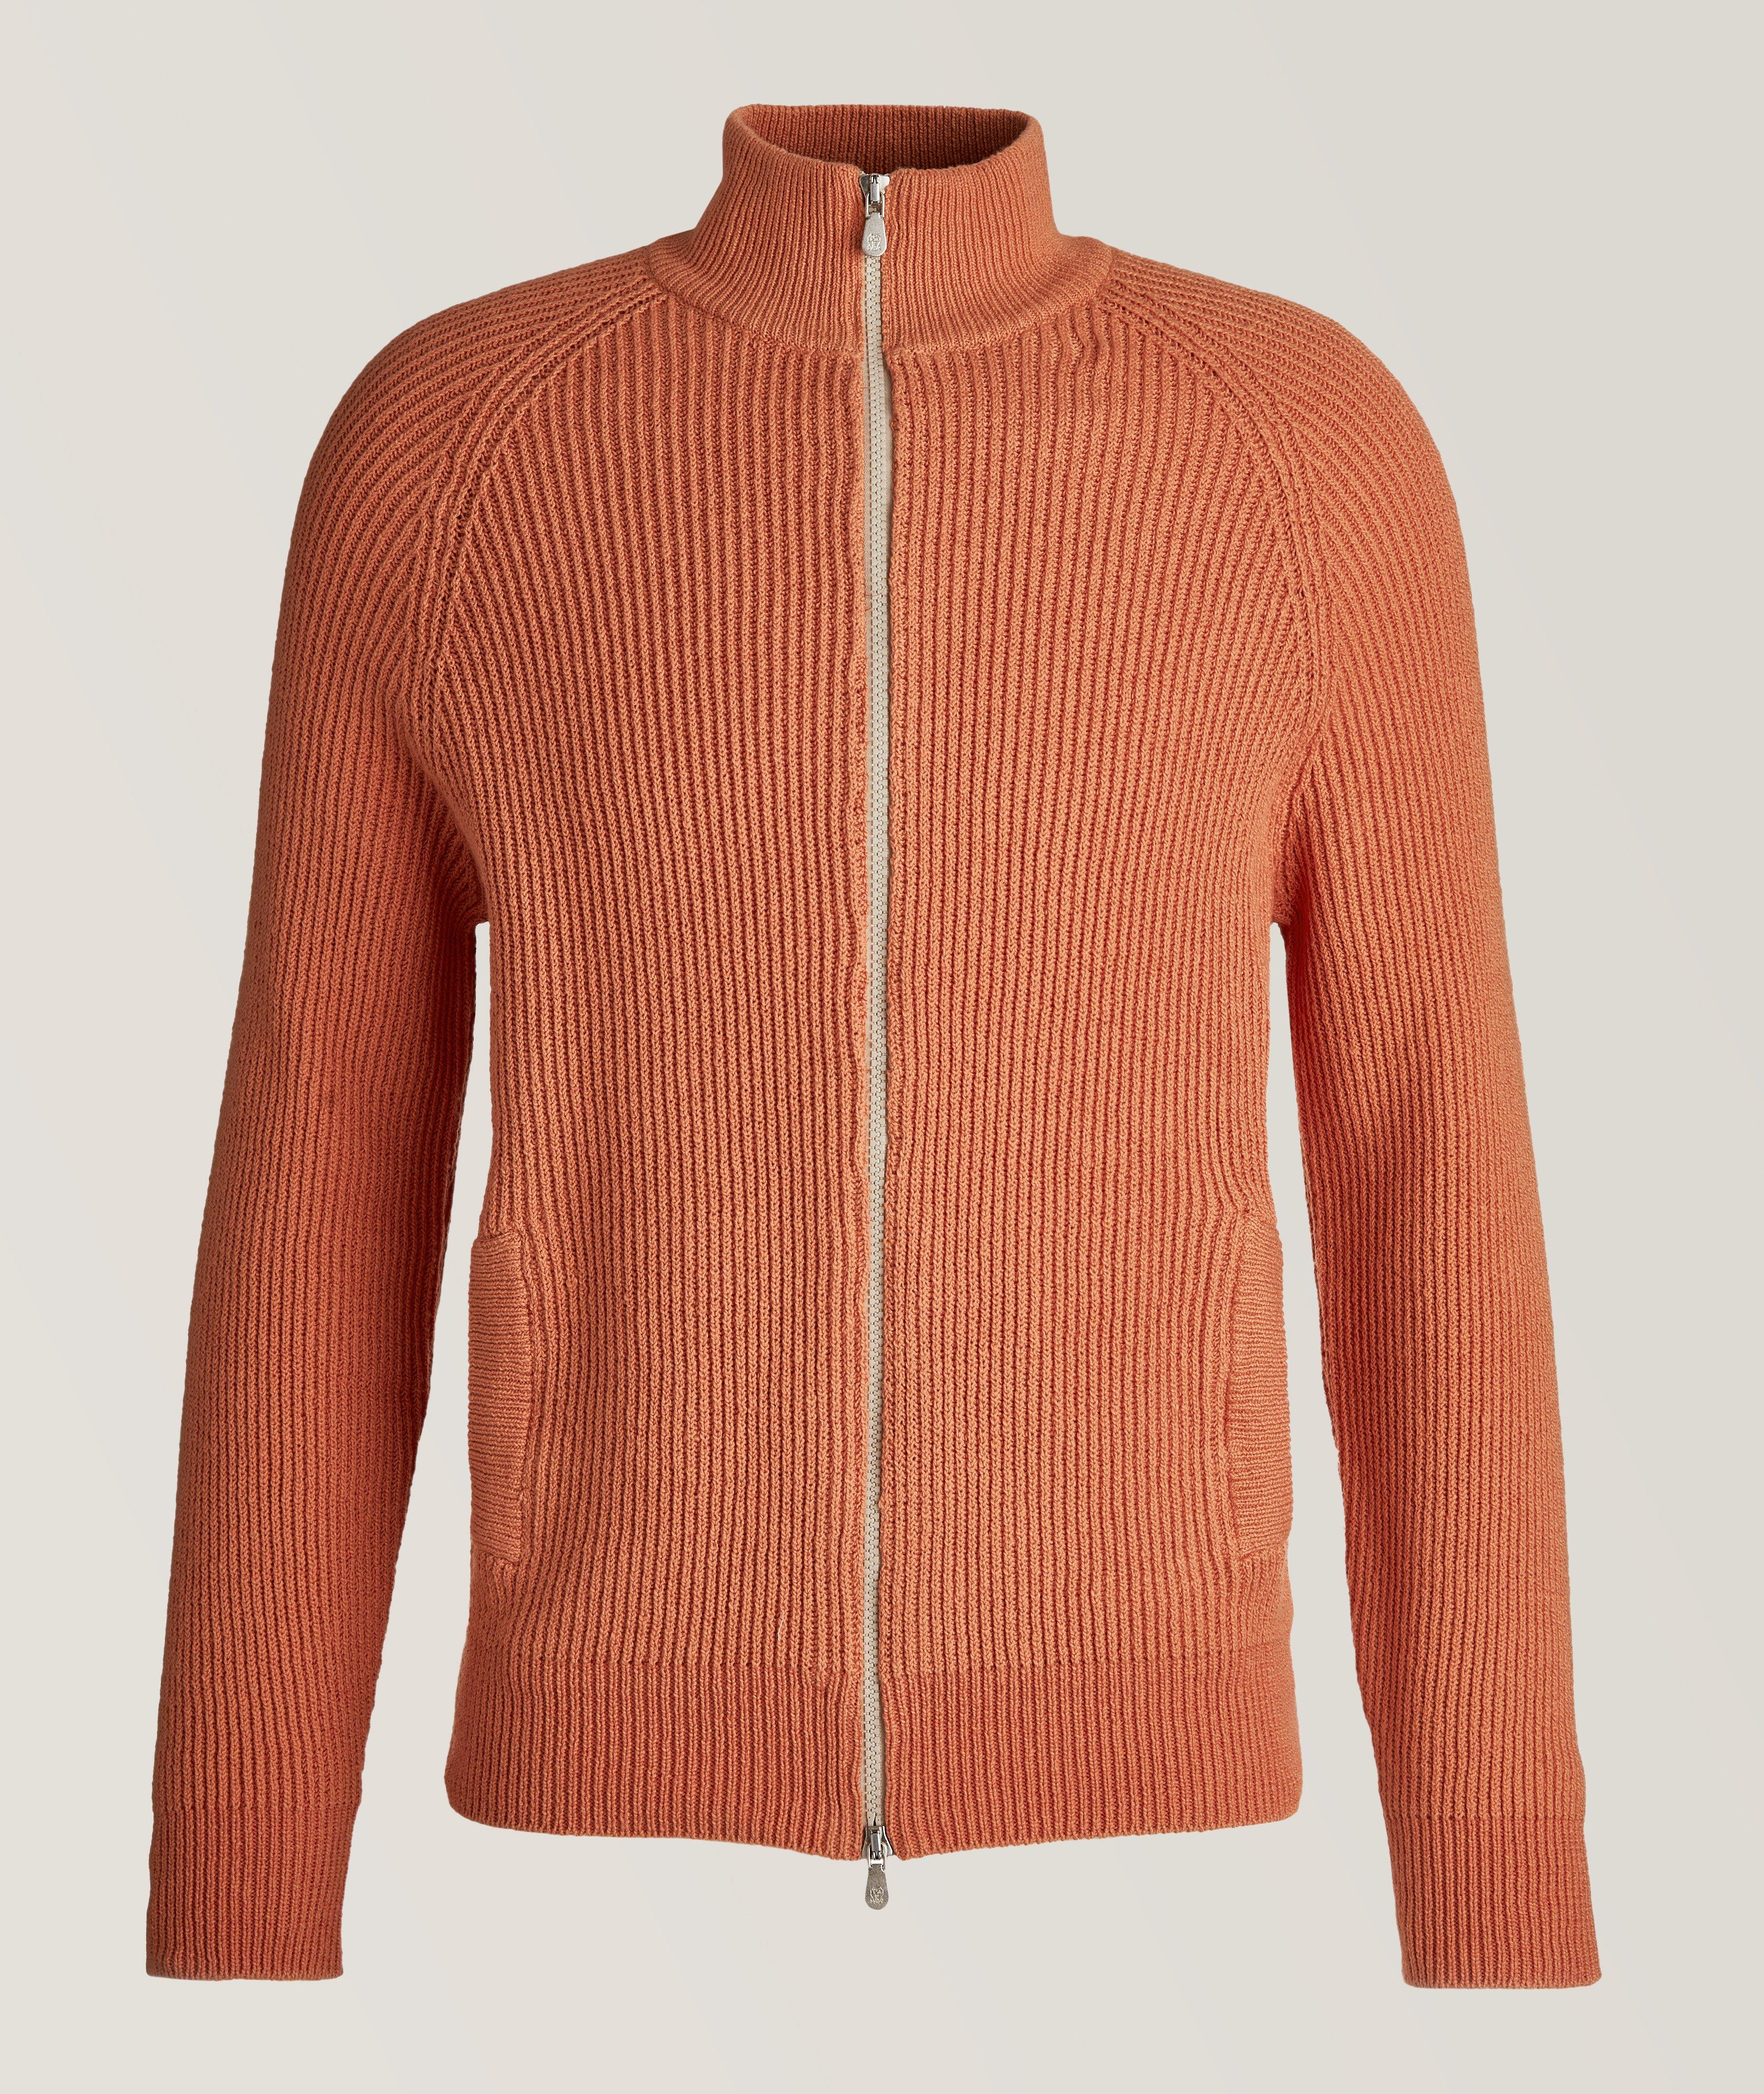 Cardigan en tricot côtelé de coton à glissière image 0